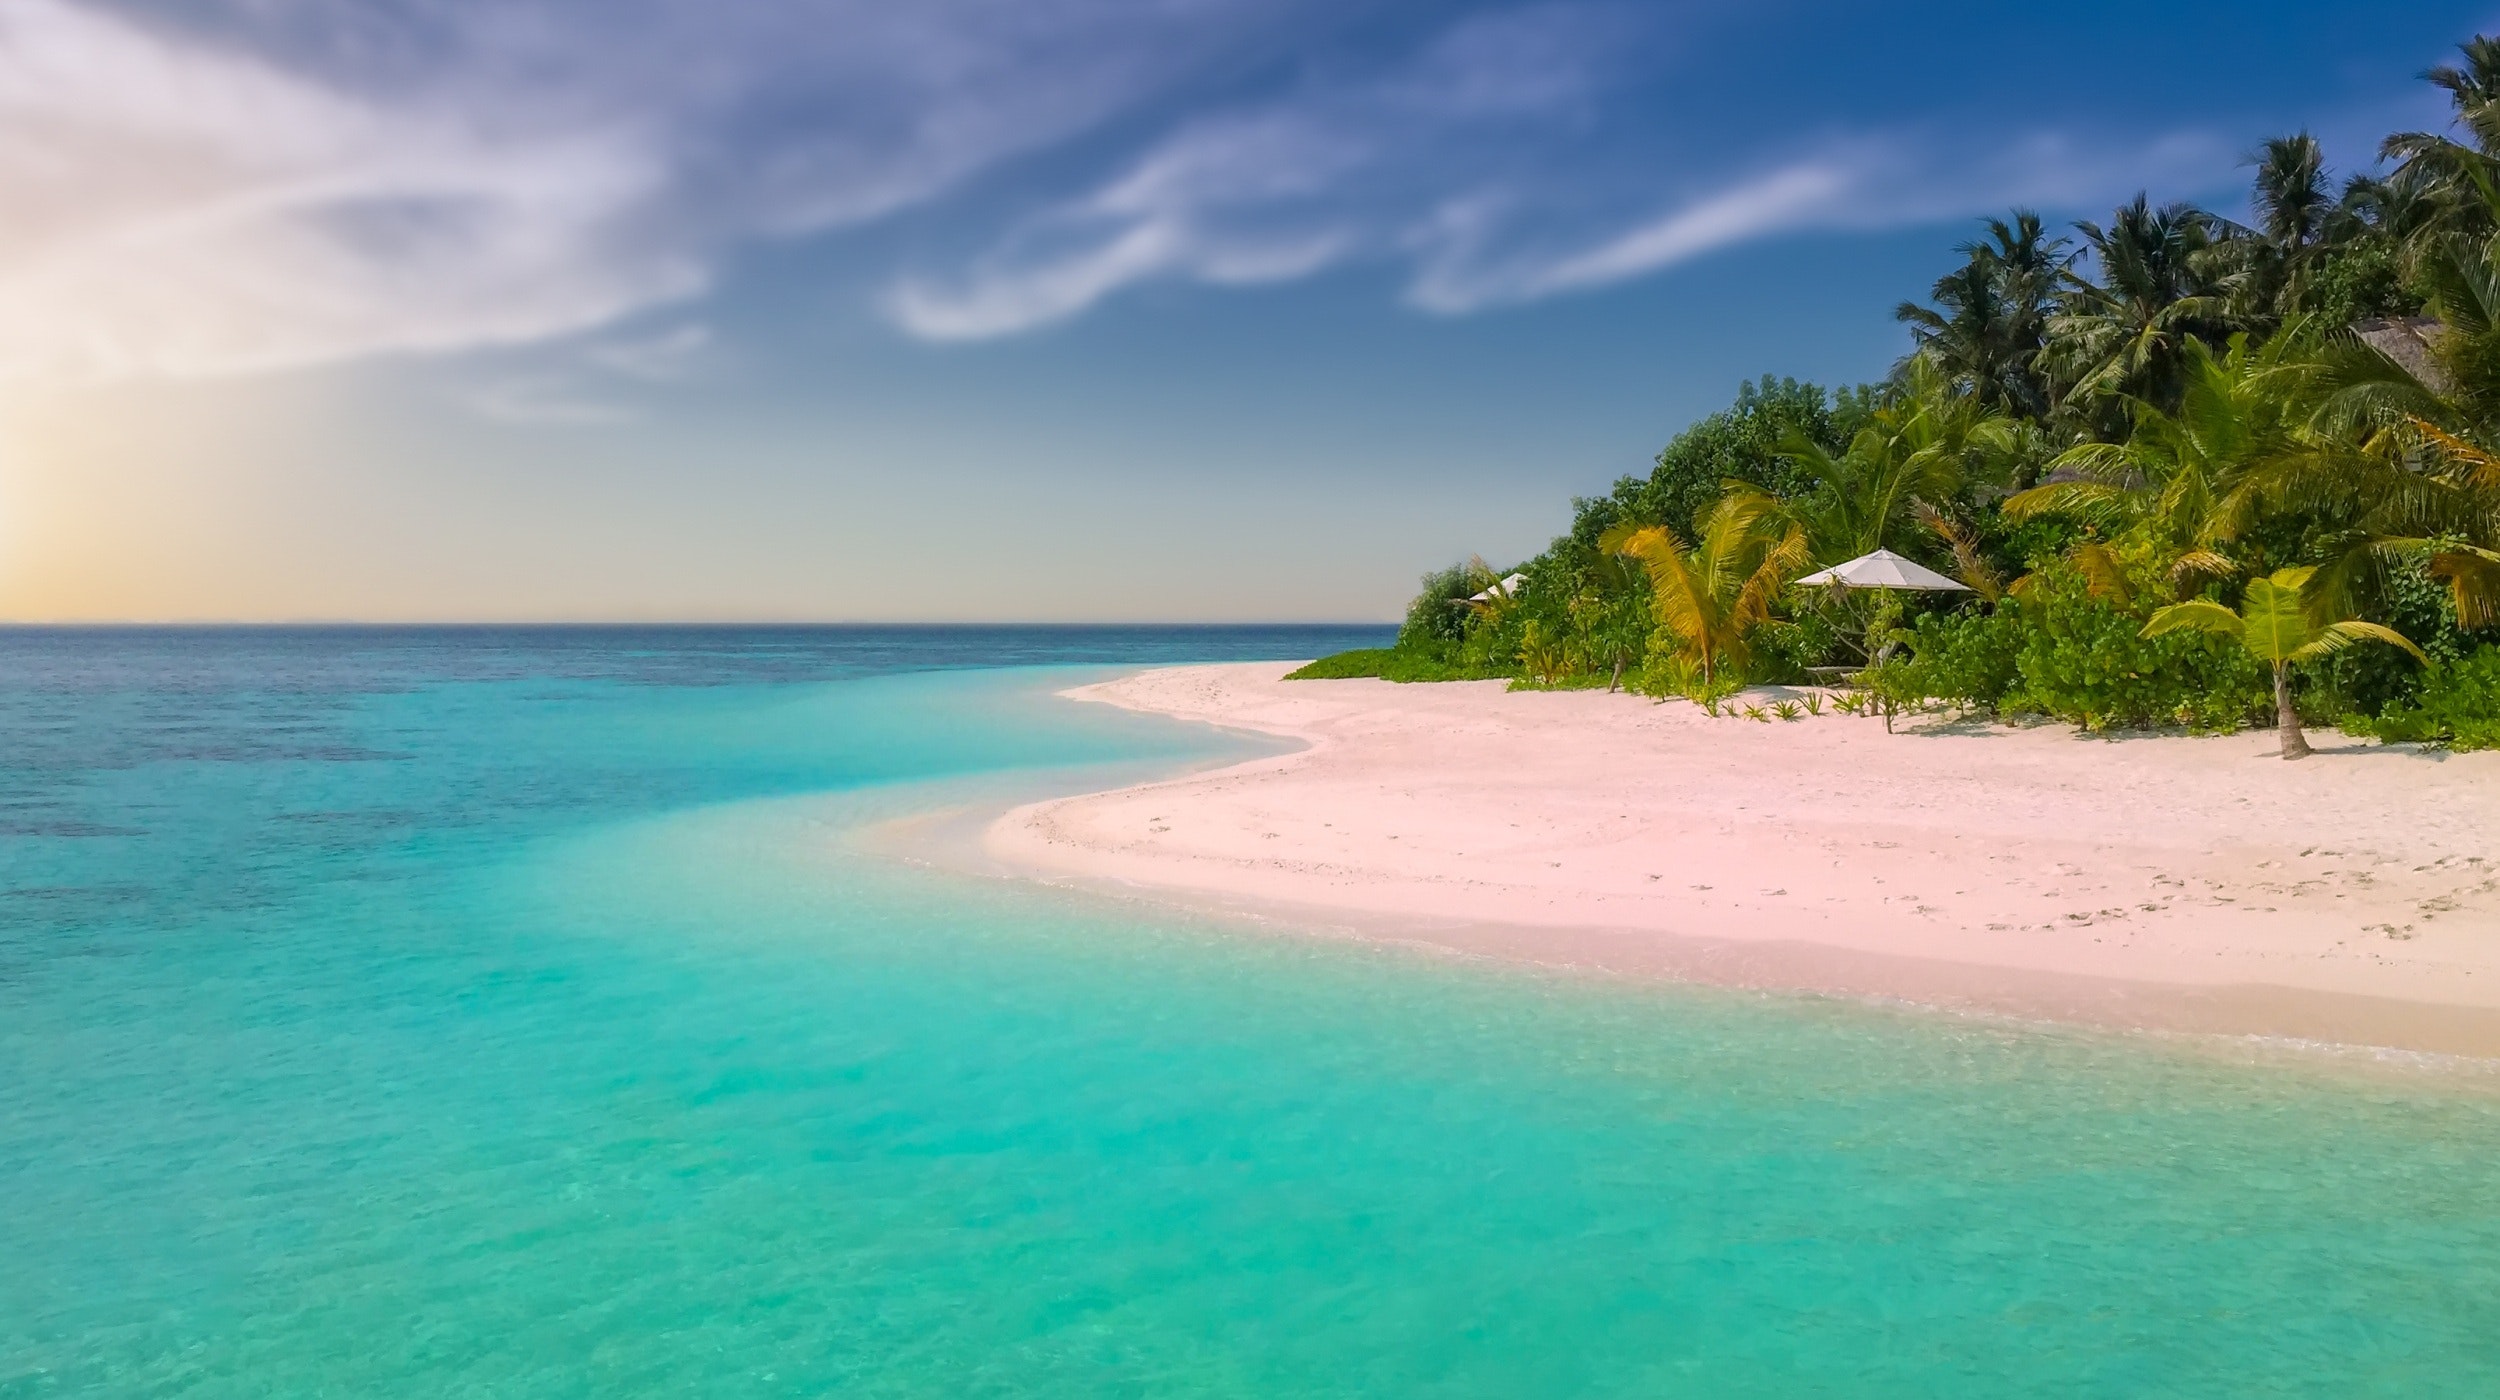 Free stock photo of beach, coast, coconut trees